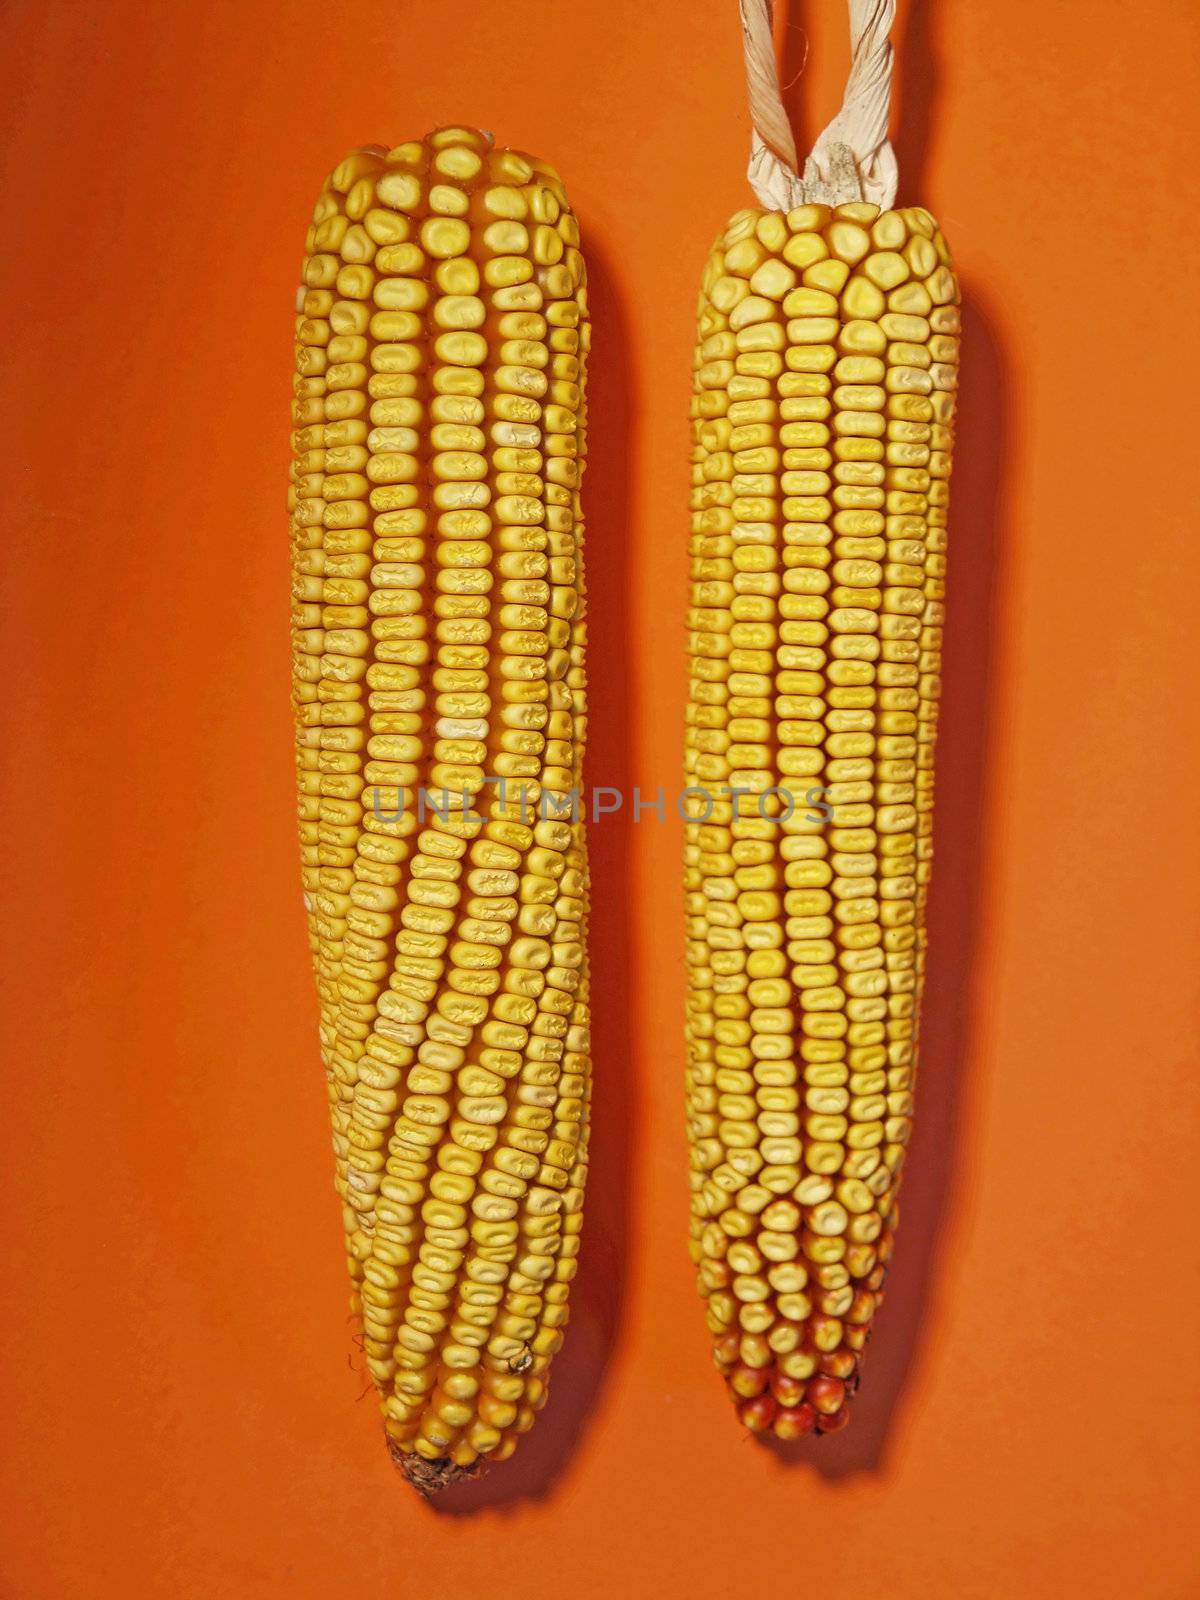 Maize Cob